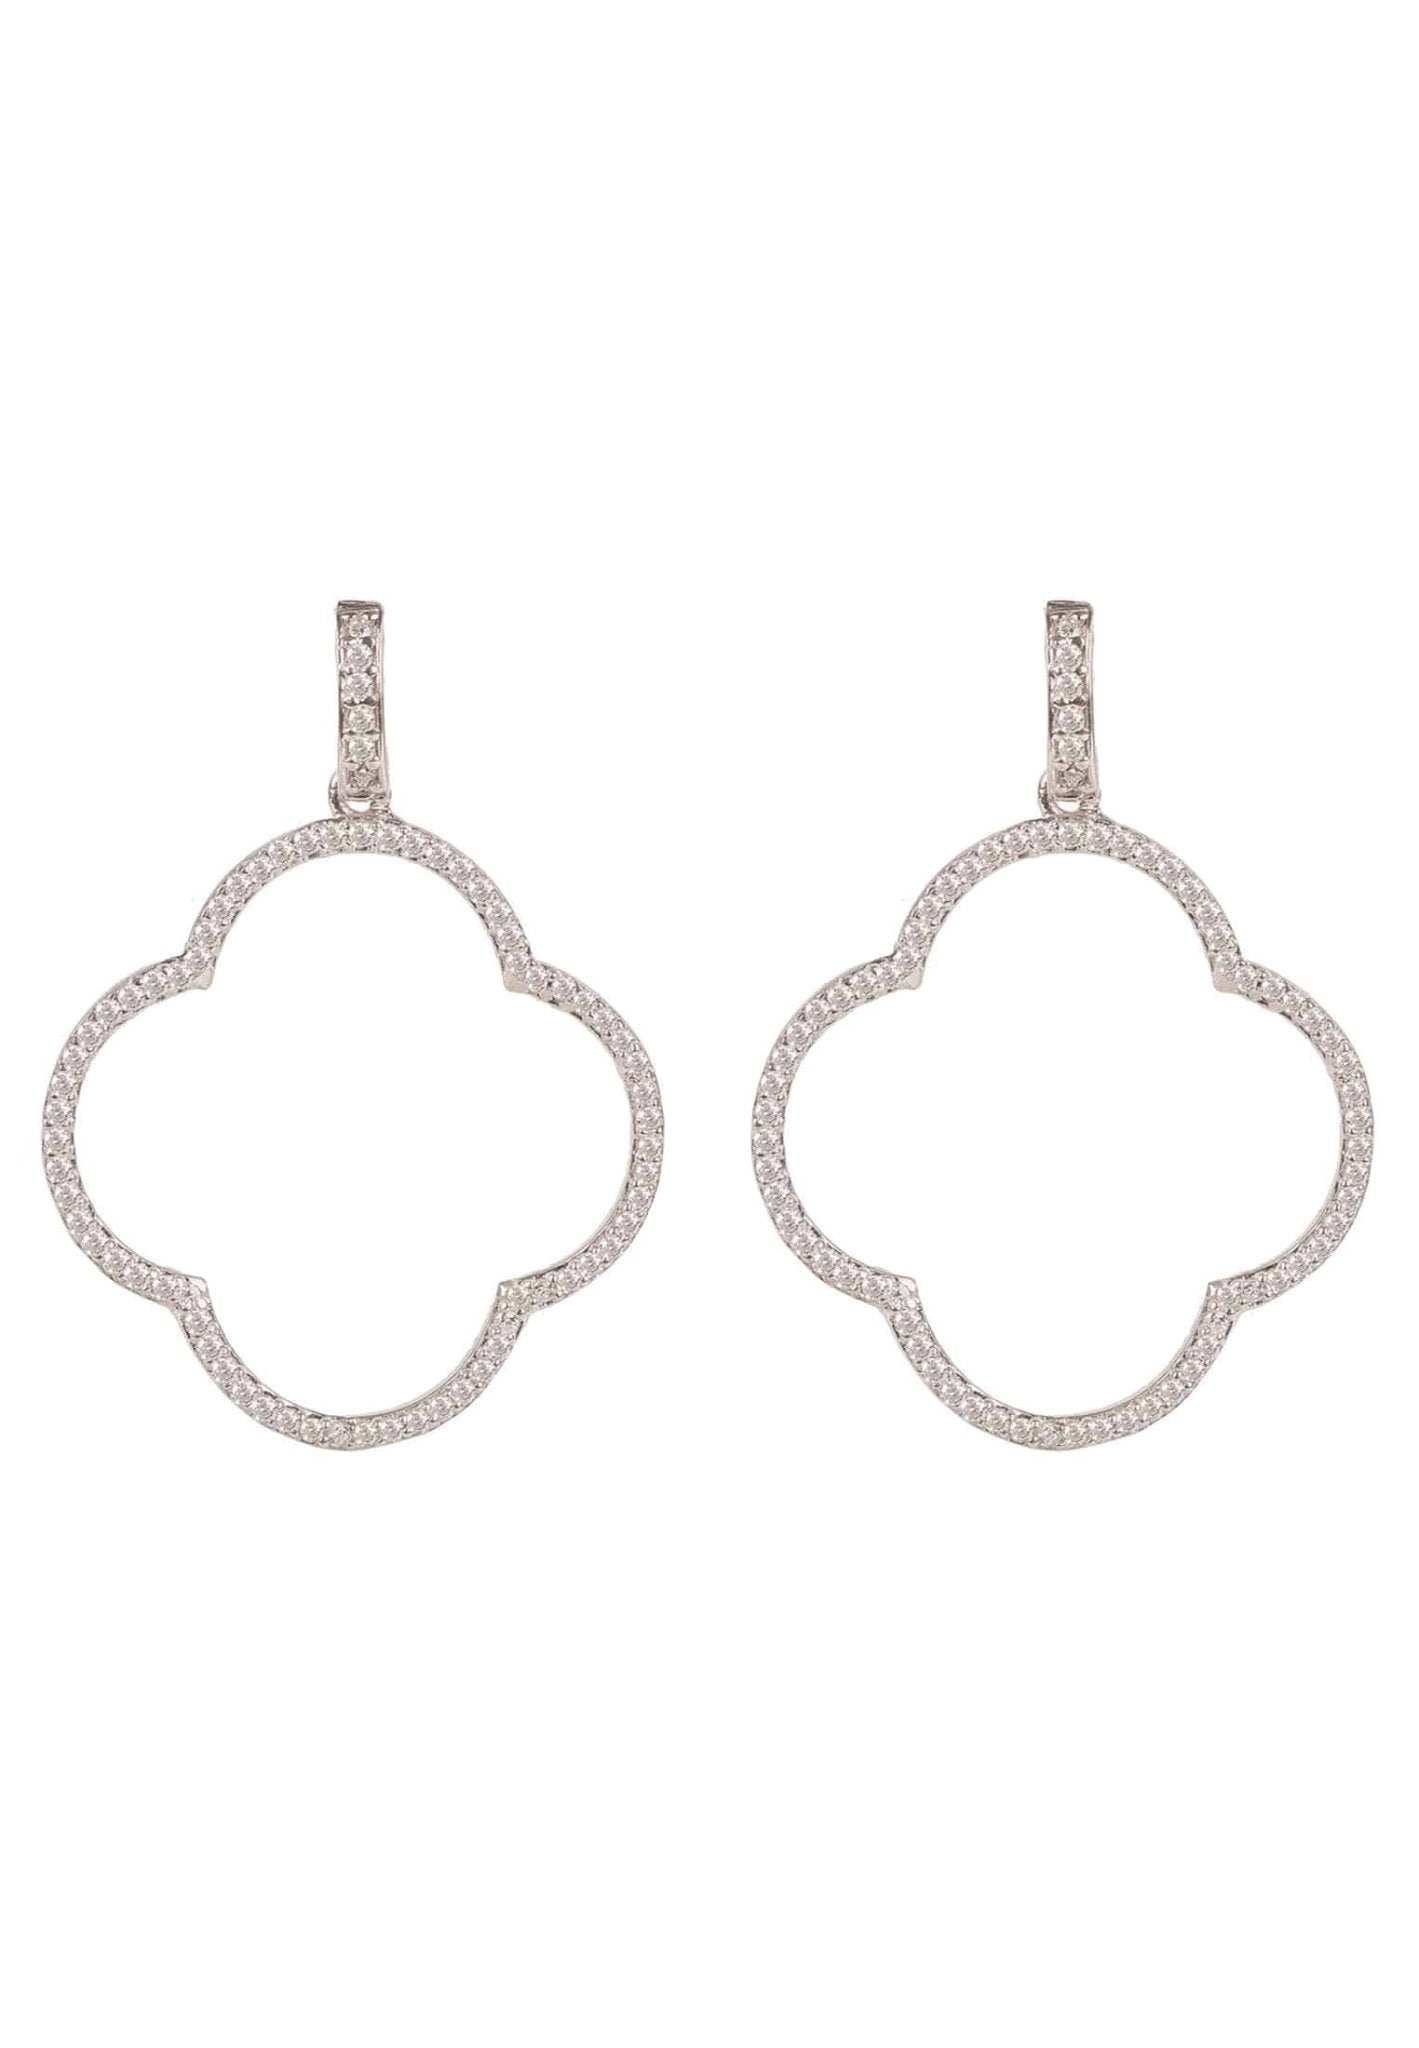 Open Clover Large Drop Earrings White Cz Silver - LATELITA Earrings